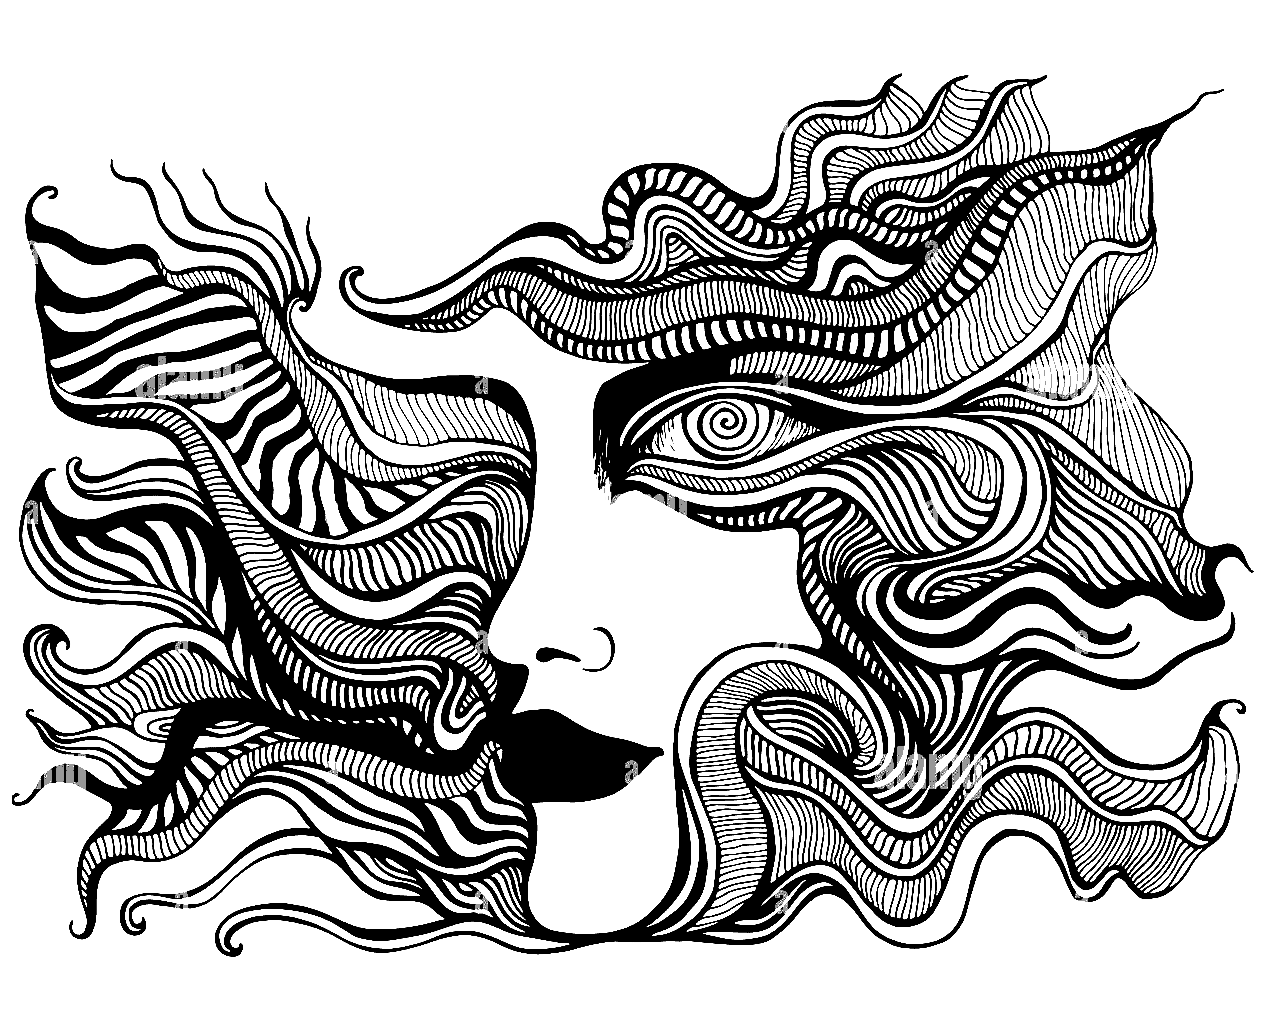 Psychedelisches Gesicht mit Spiralauge Malseite